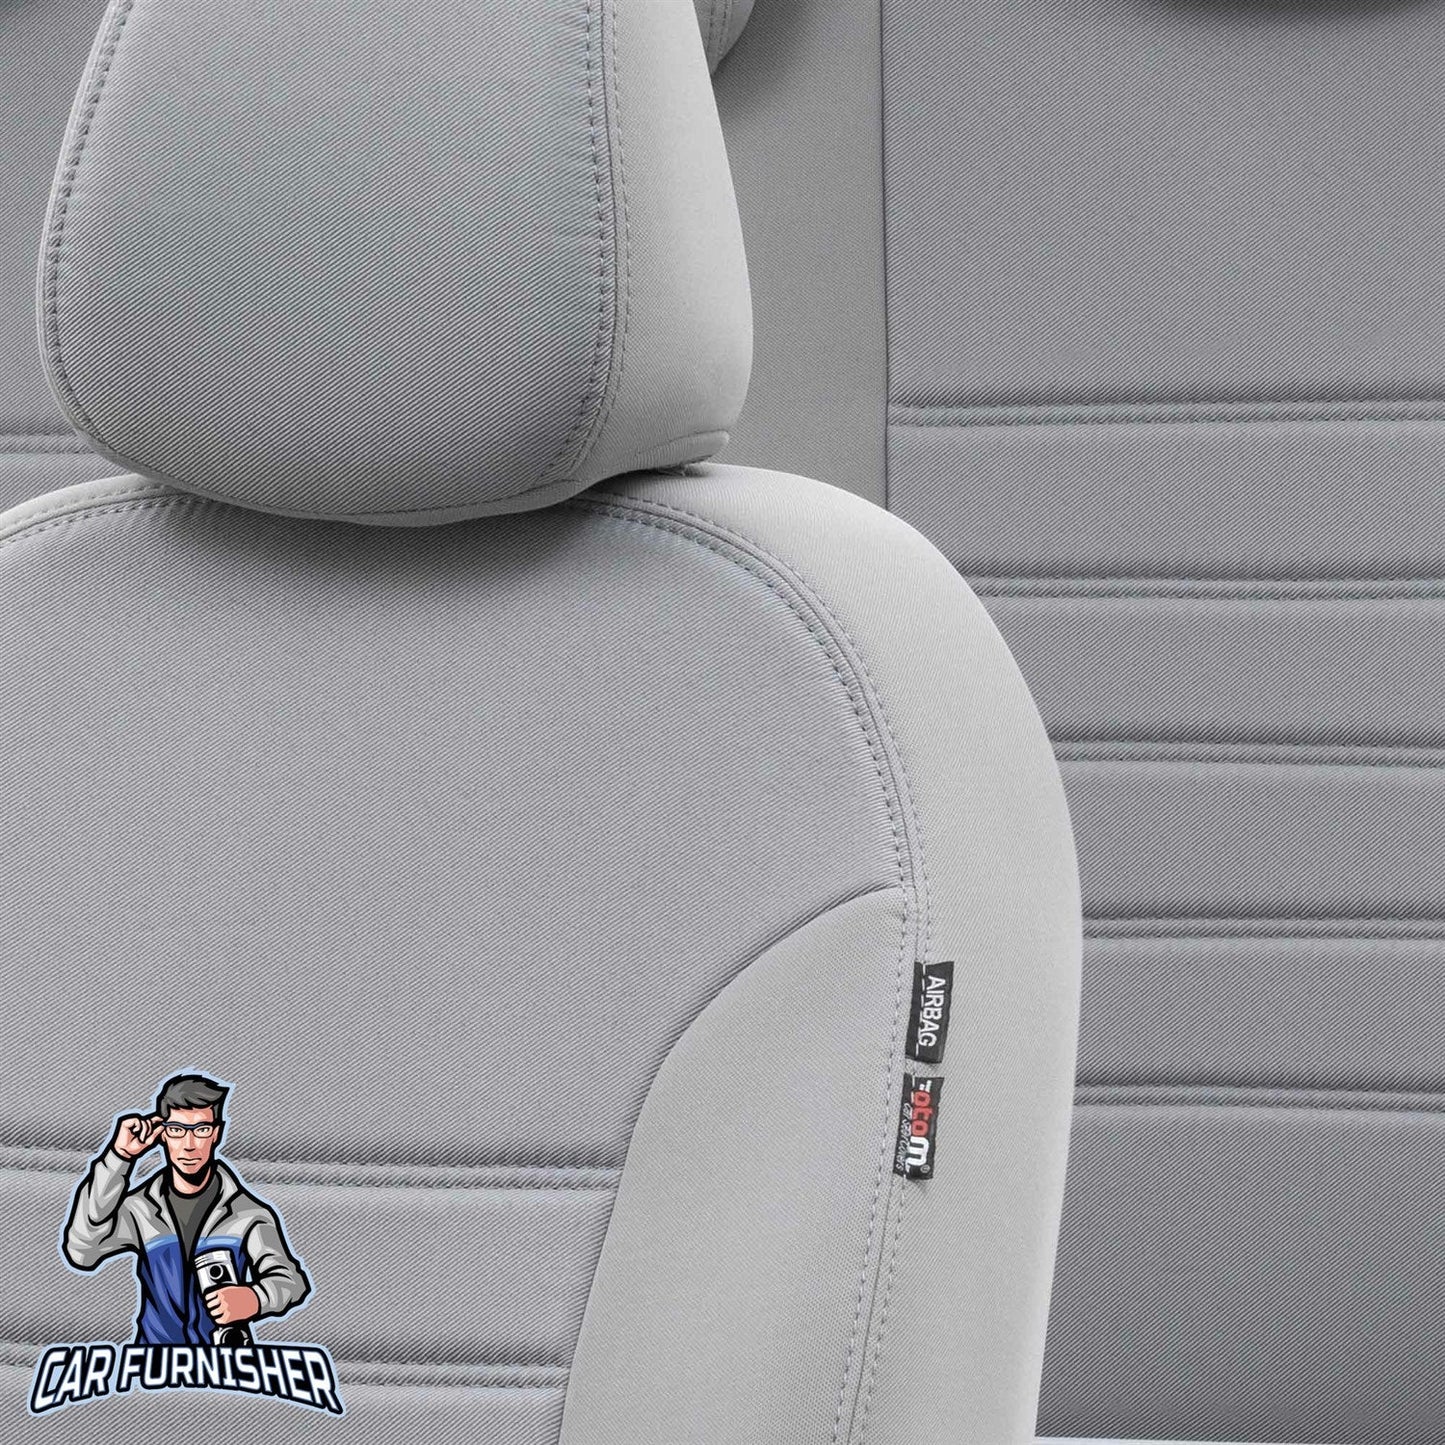 Toyota Auris Seat Cover Original Jacquard Design Light Gray Jacquard Fabric